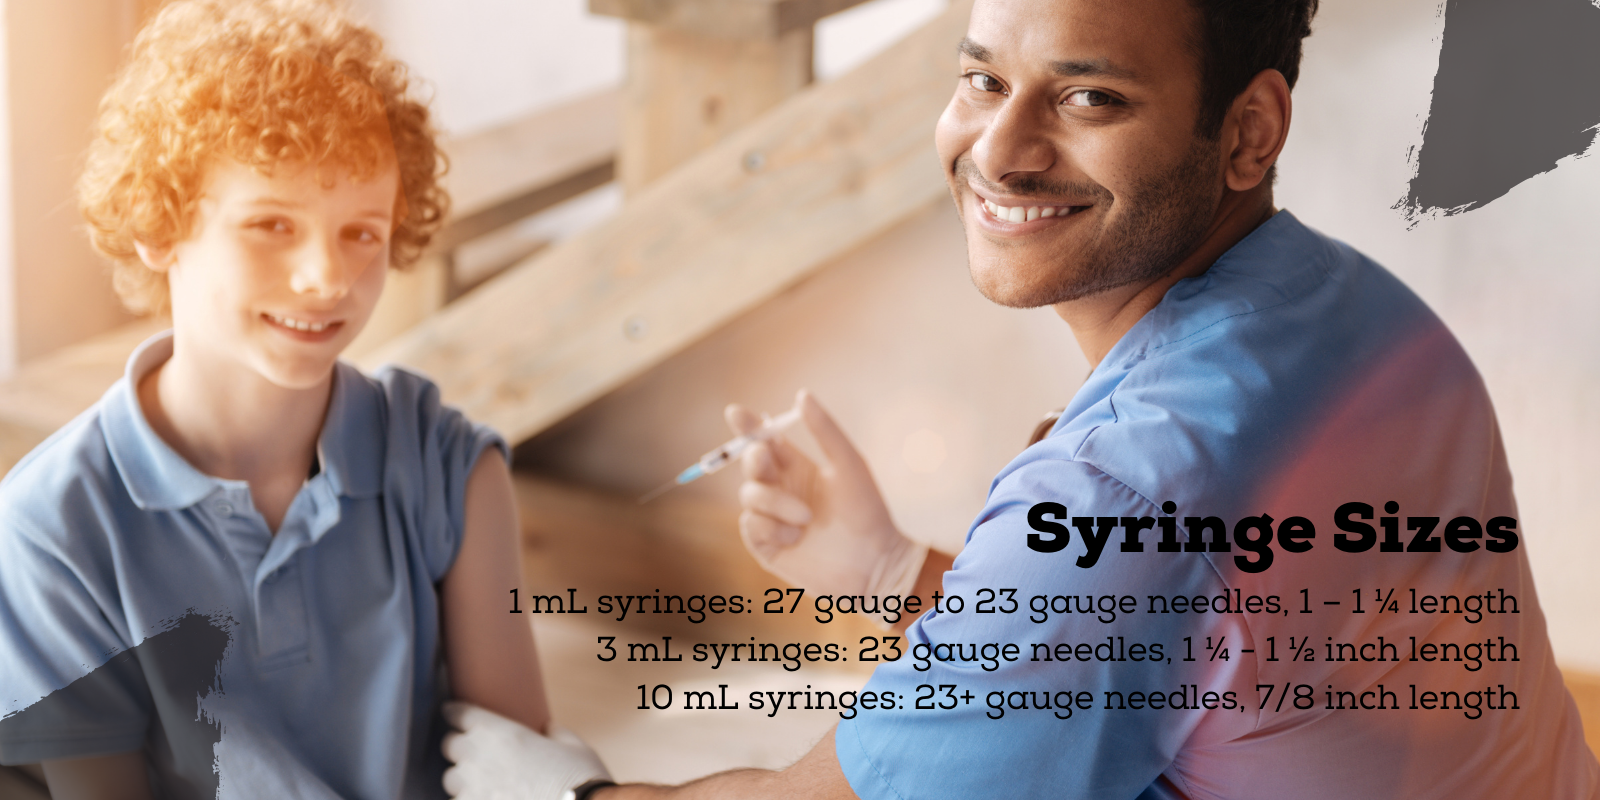 Steroids Syringe Sizes